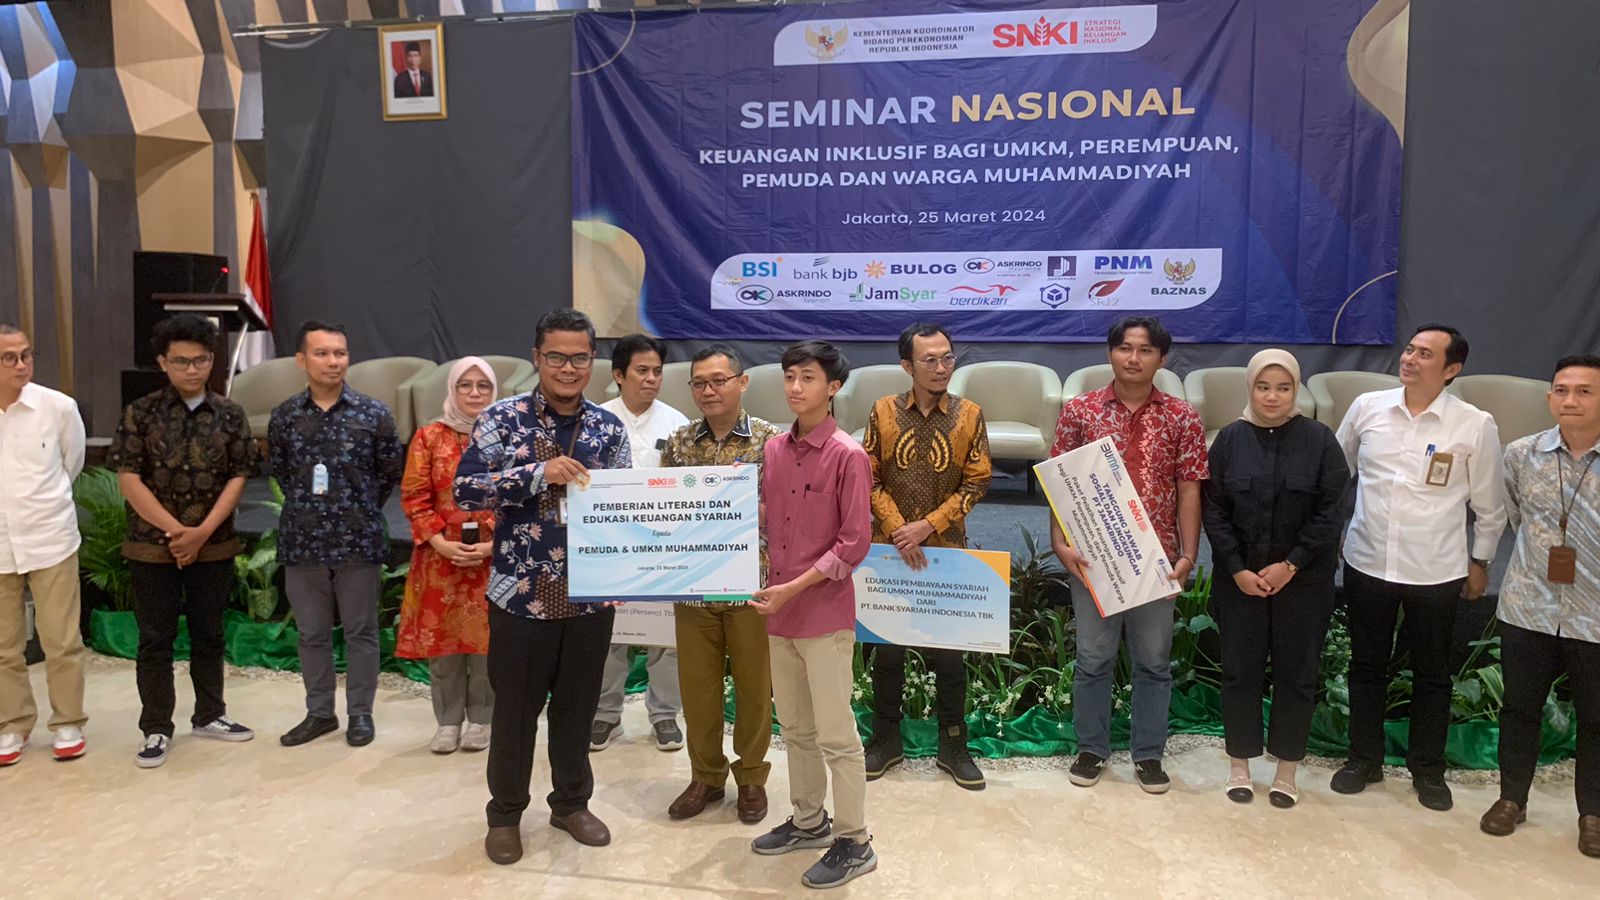 Askrindo Syariah Ikuti Seminar Nasional Keuangan Inklusif bagi UMKM Warga Muhammadiyah